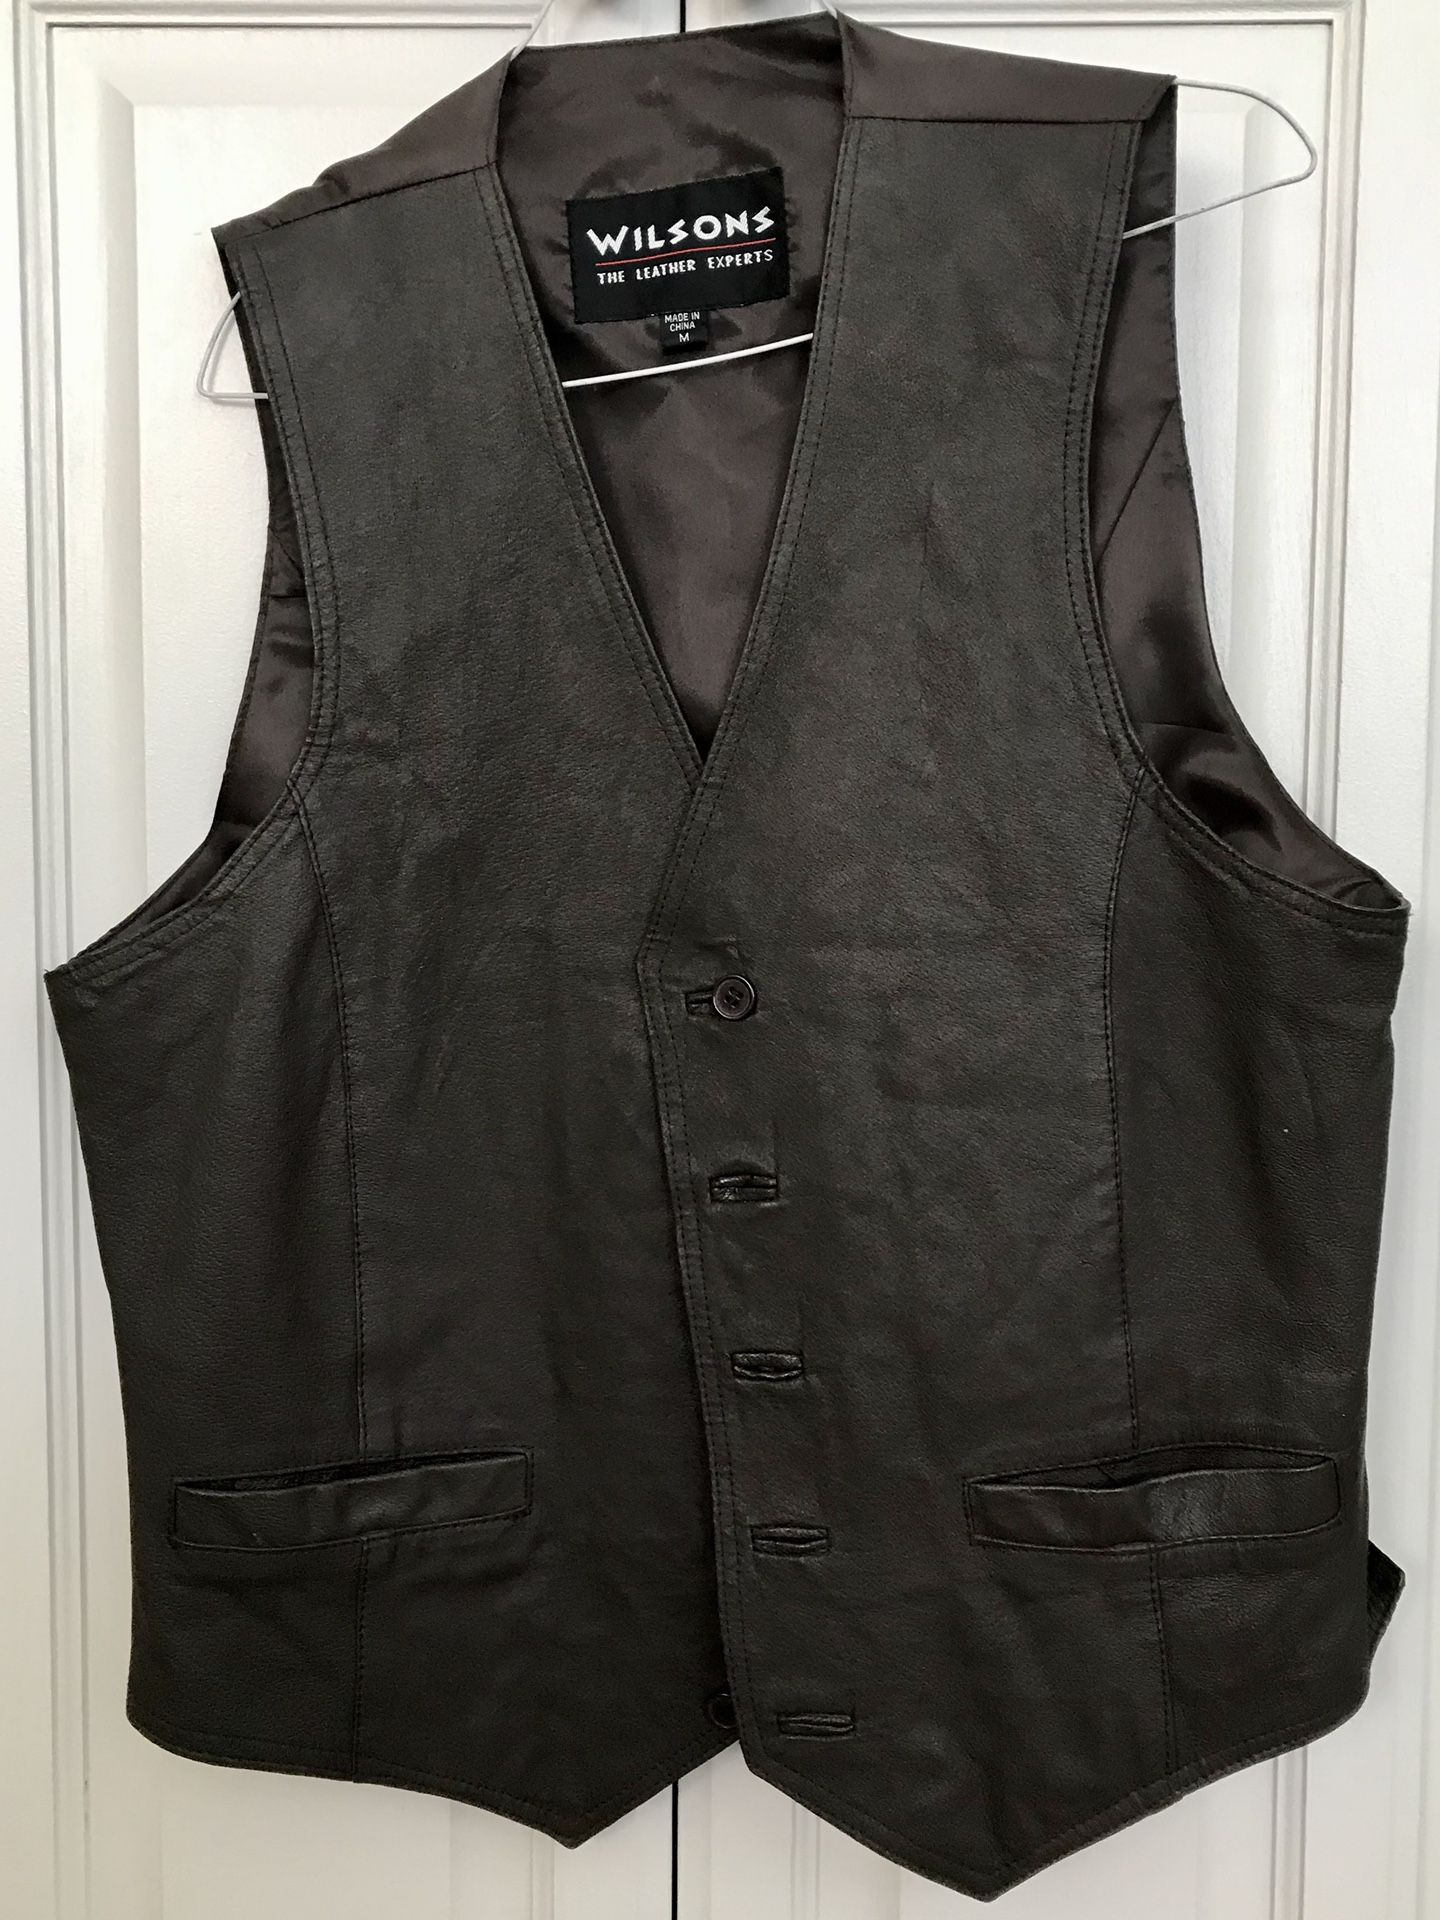 Wilson's Leather Vest